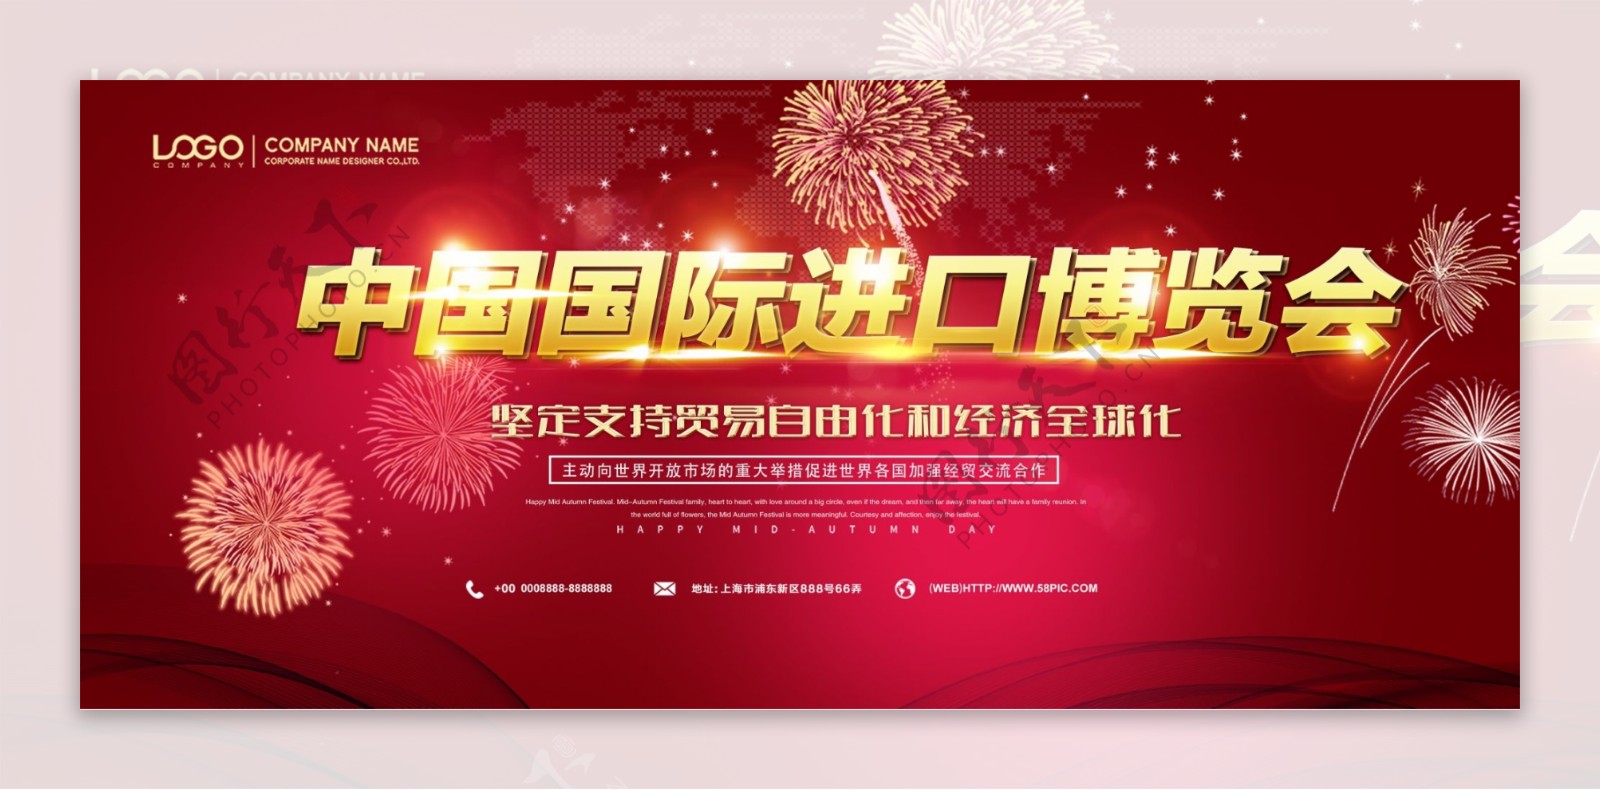 红色科技中国国际进口博览会宣传展板